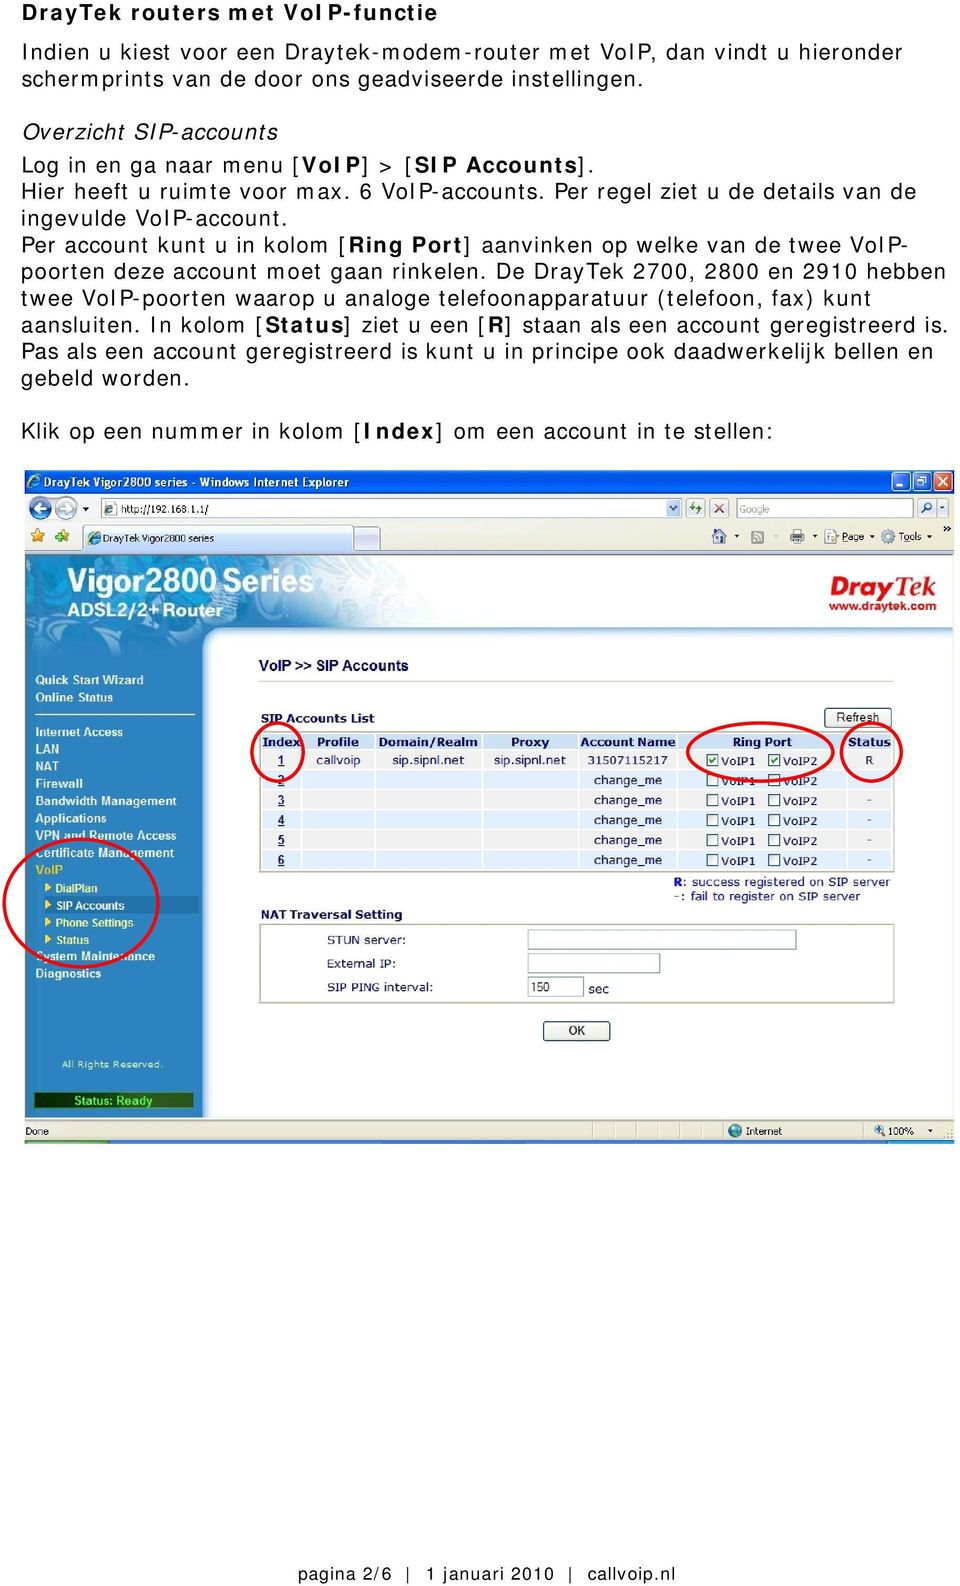 Per account kunt u in kolom [Ring Port] aanvinken op welke van de twee VoIPpoorten deze account moet gaan rinkelen.